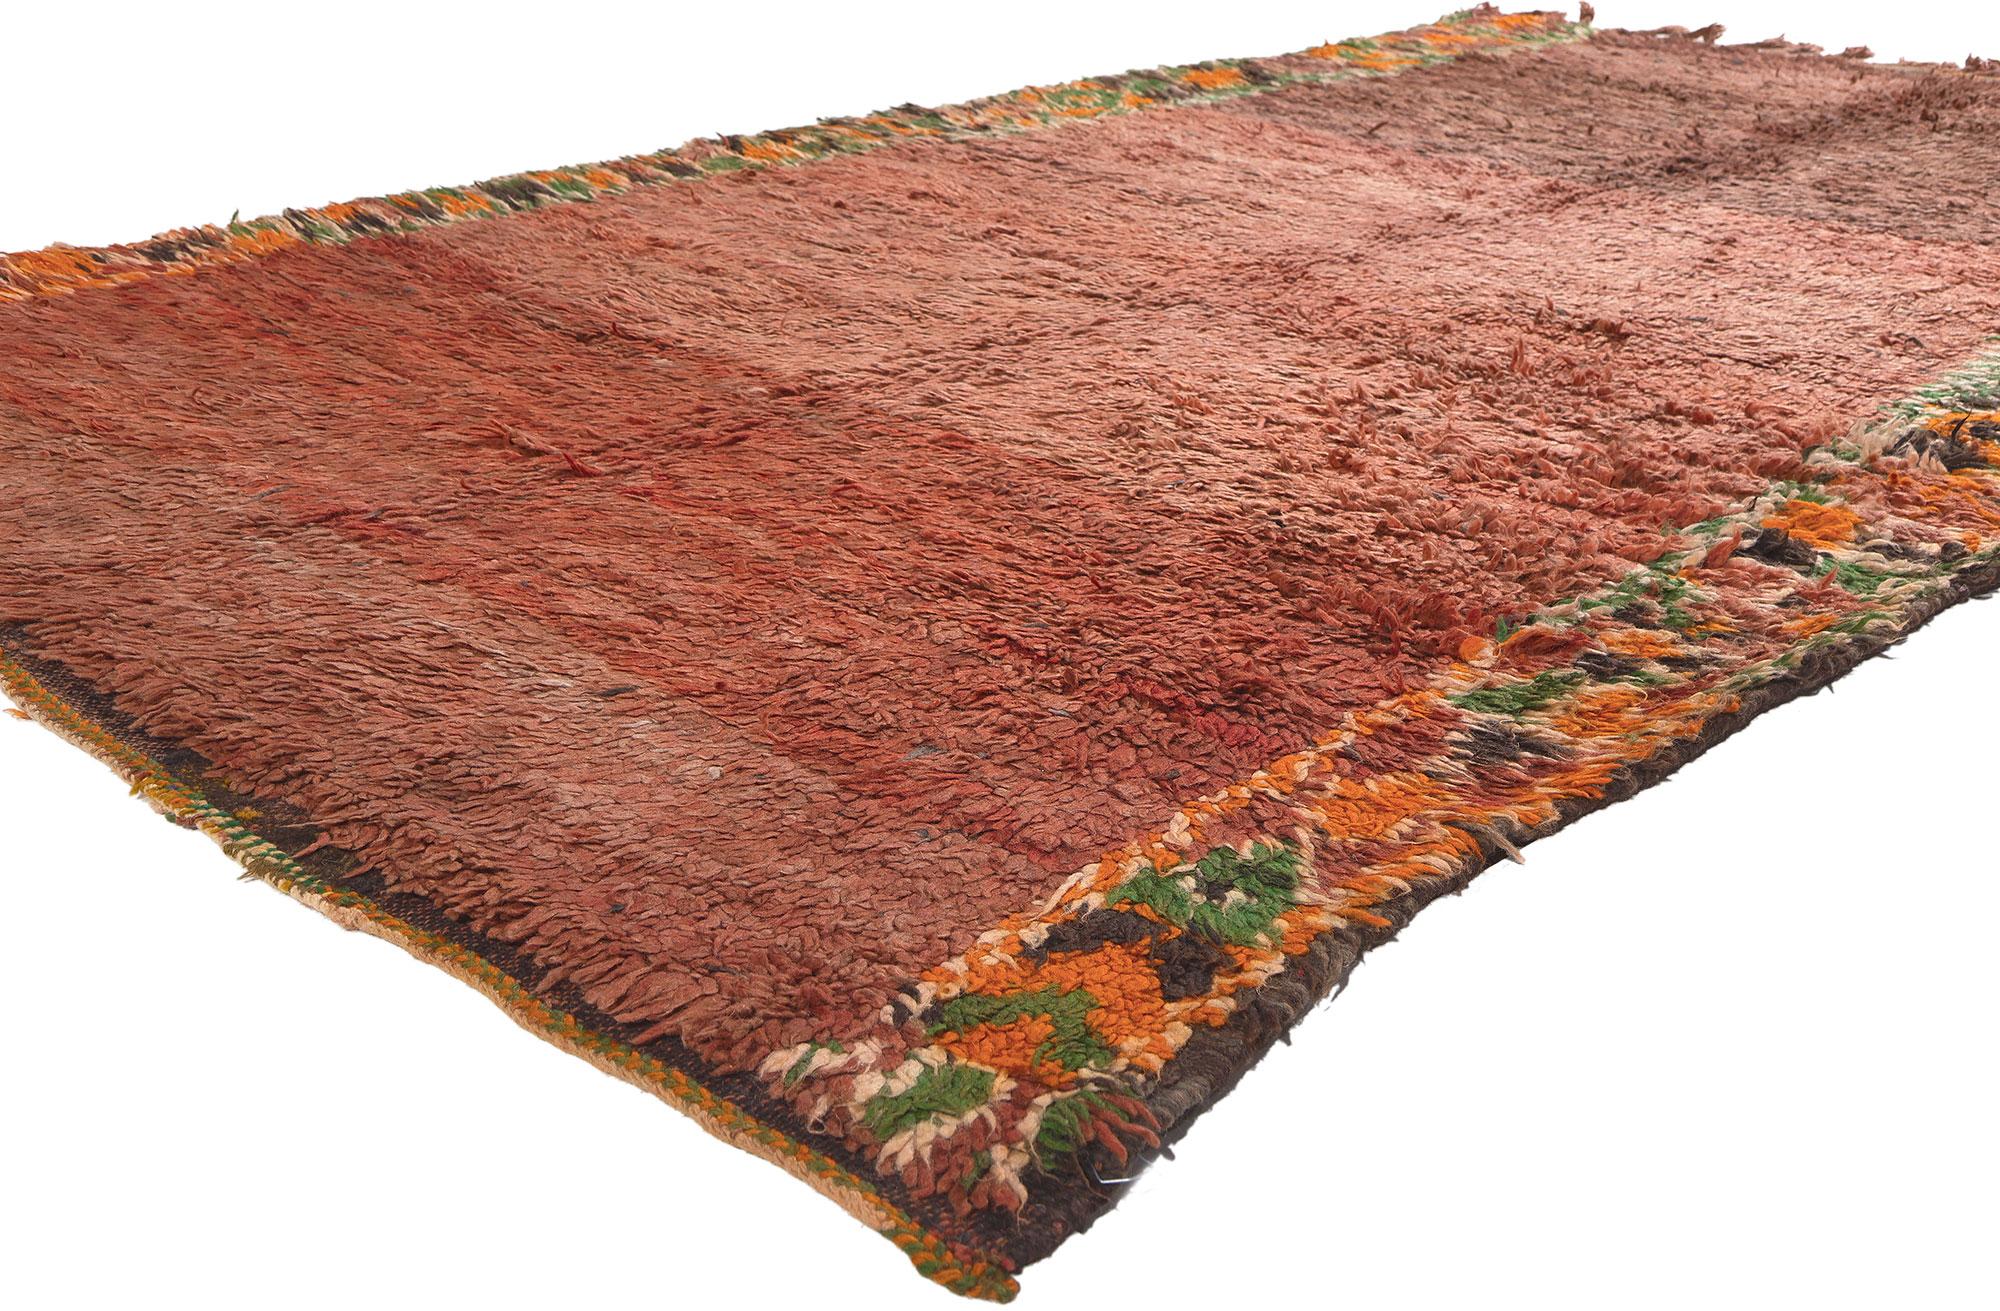 20895 Vintage Beni MGuild Marokkanischer Teppich, 05'05 x 09'02.

Biophiles Design trifft auf Stammeszauber in diesem handgeknüpften marokkanischen Wollteppich Beni MGuild. Das Farbblockdesign und die erdigen Farbtöne, die in dieses Stück eingewebt